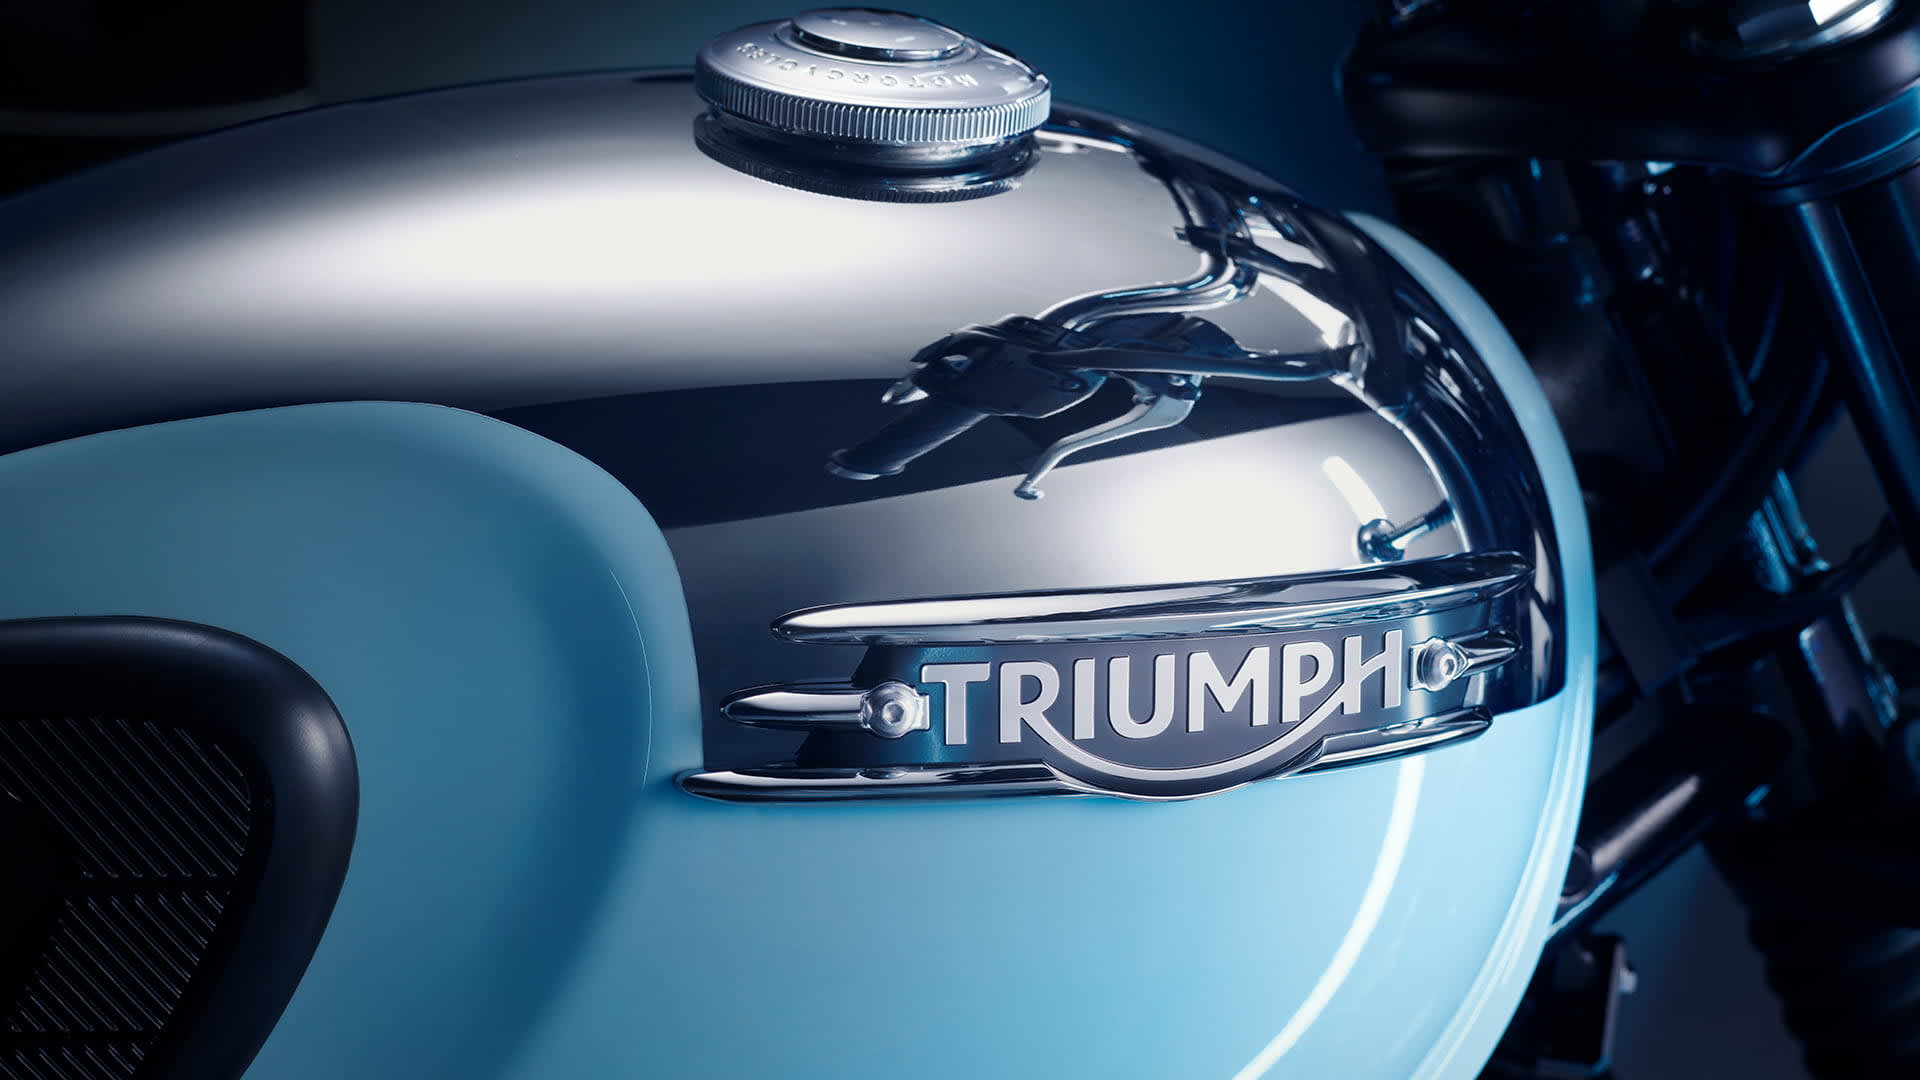 Triumph Bonneville T120 Chrome Edition Fuel Tank